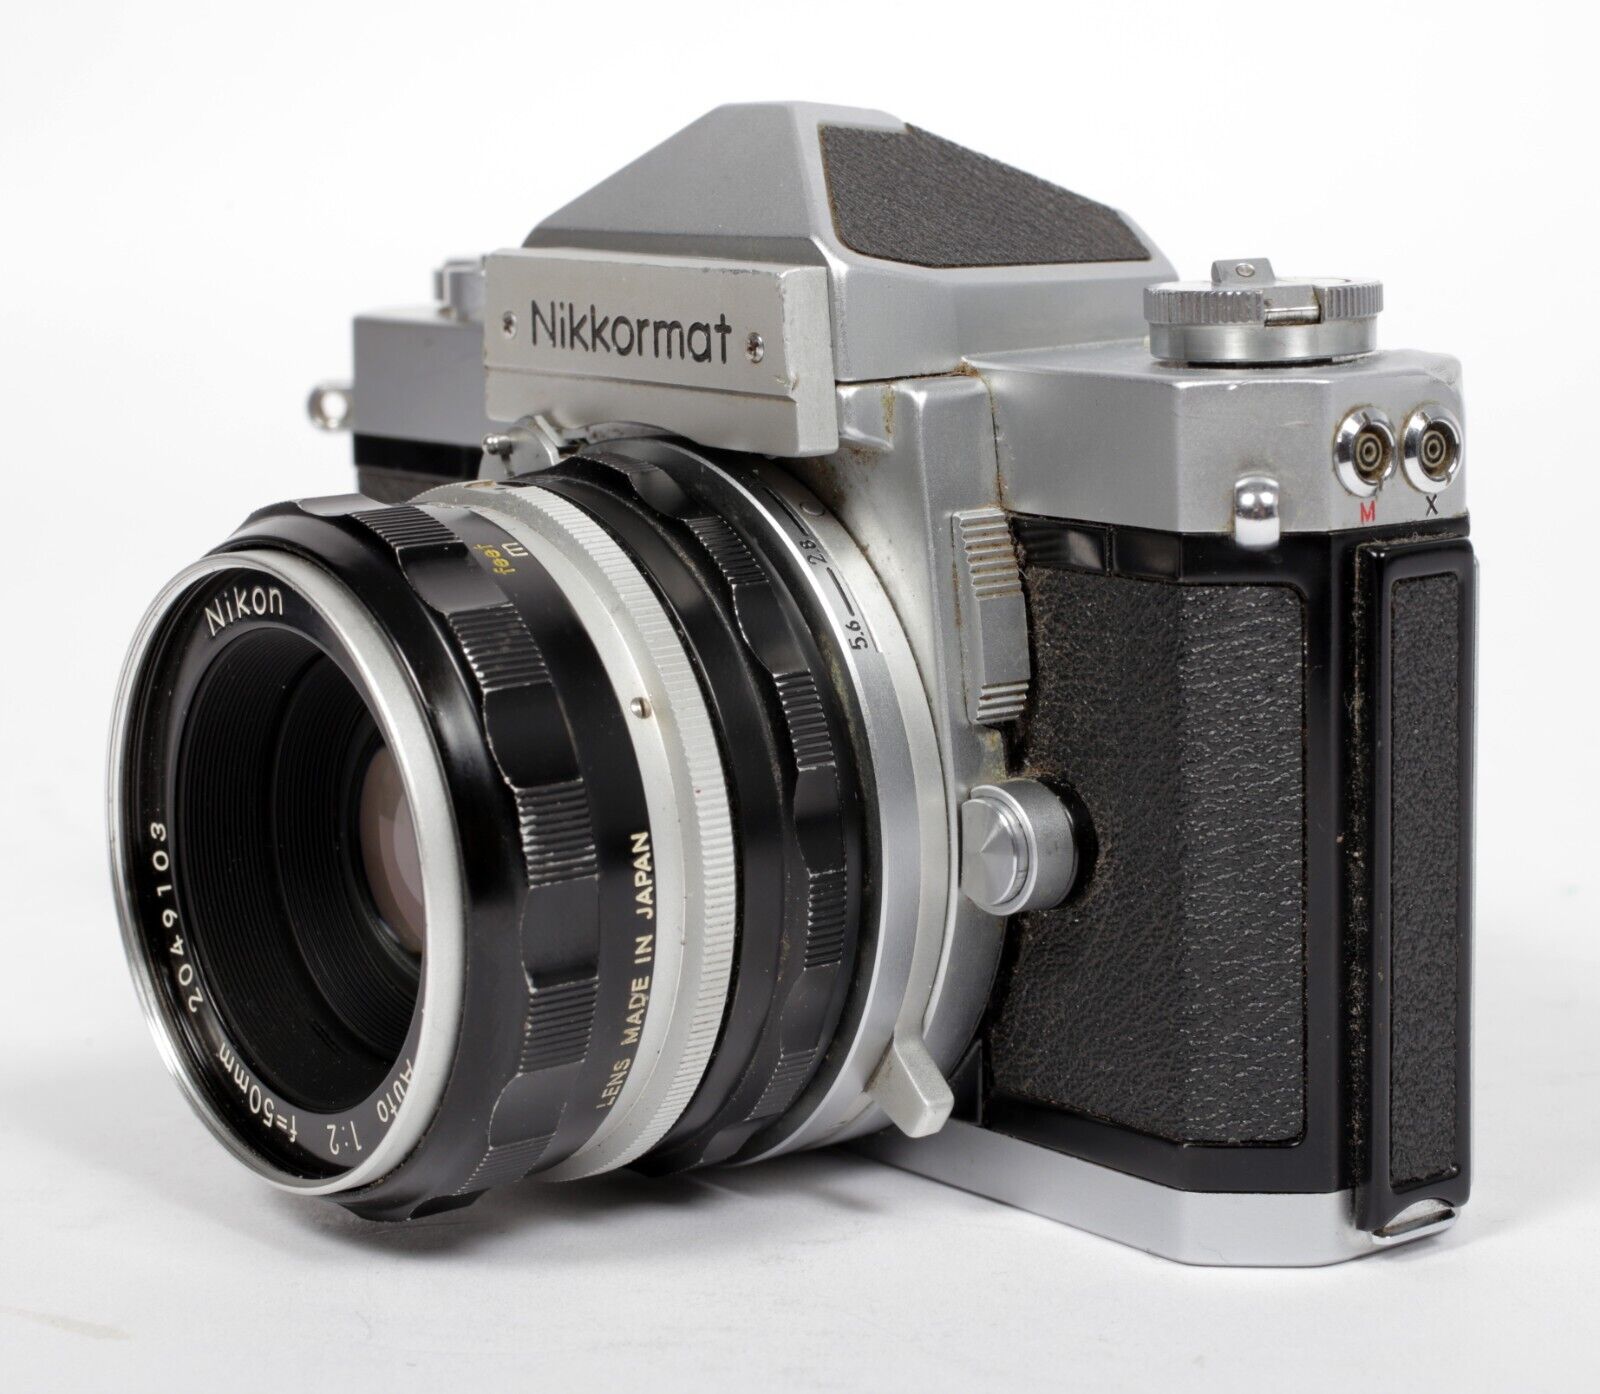 Nikon Nikkormat FTn 35mm SLR film camera with Nikkor H 50mm F2 